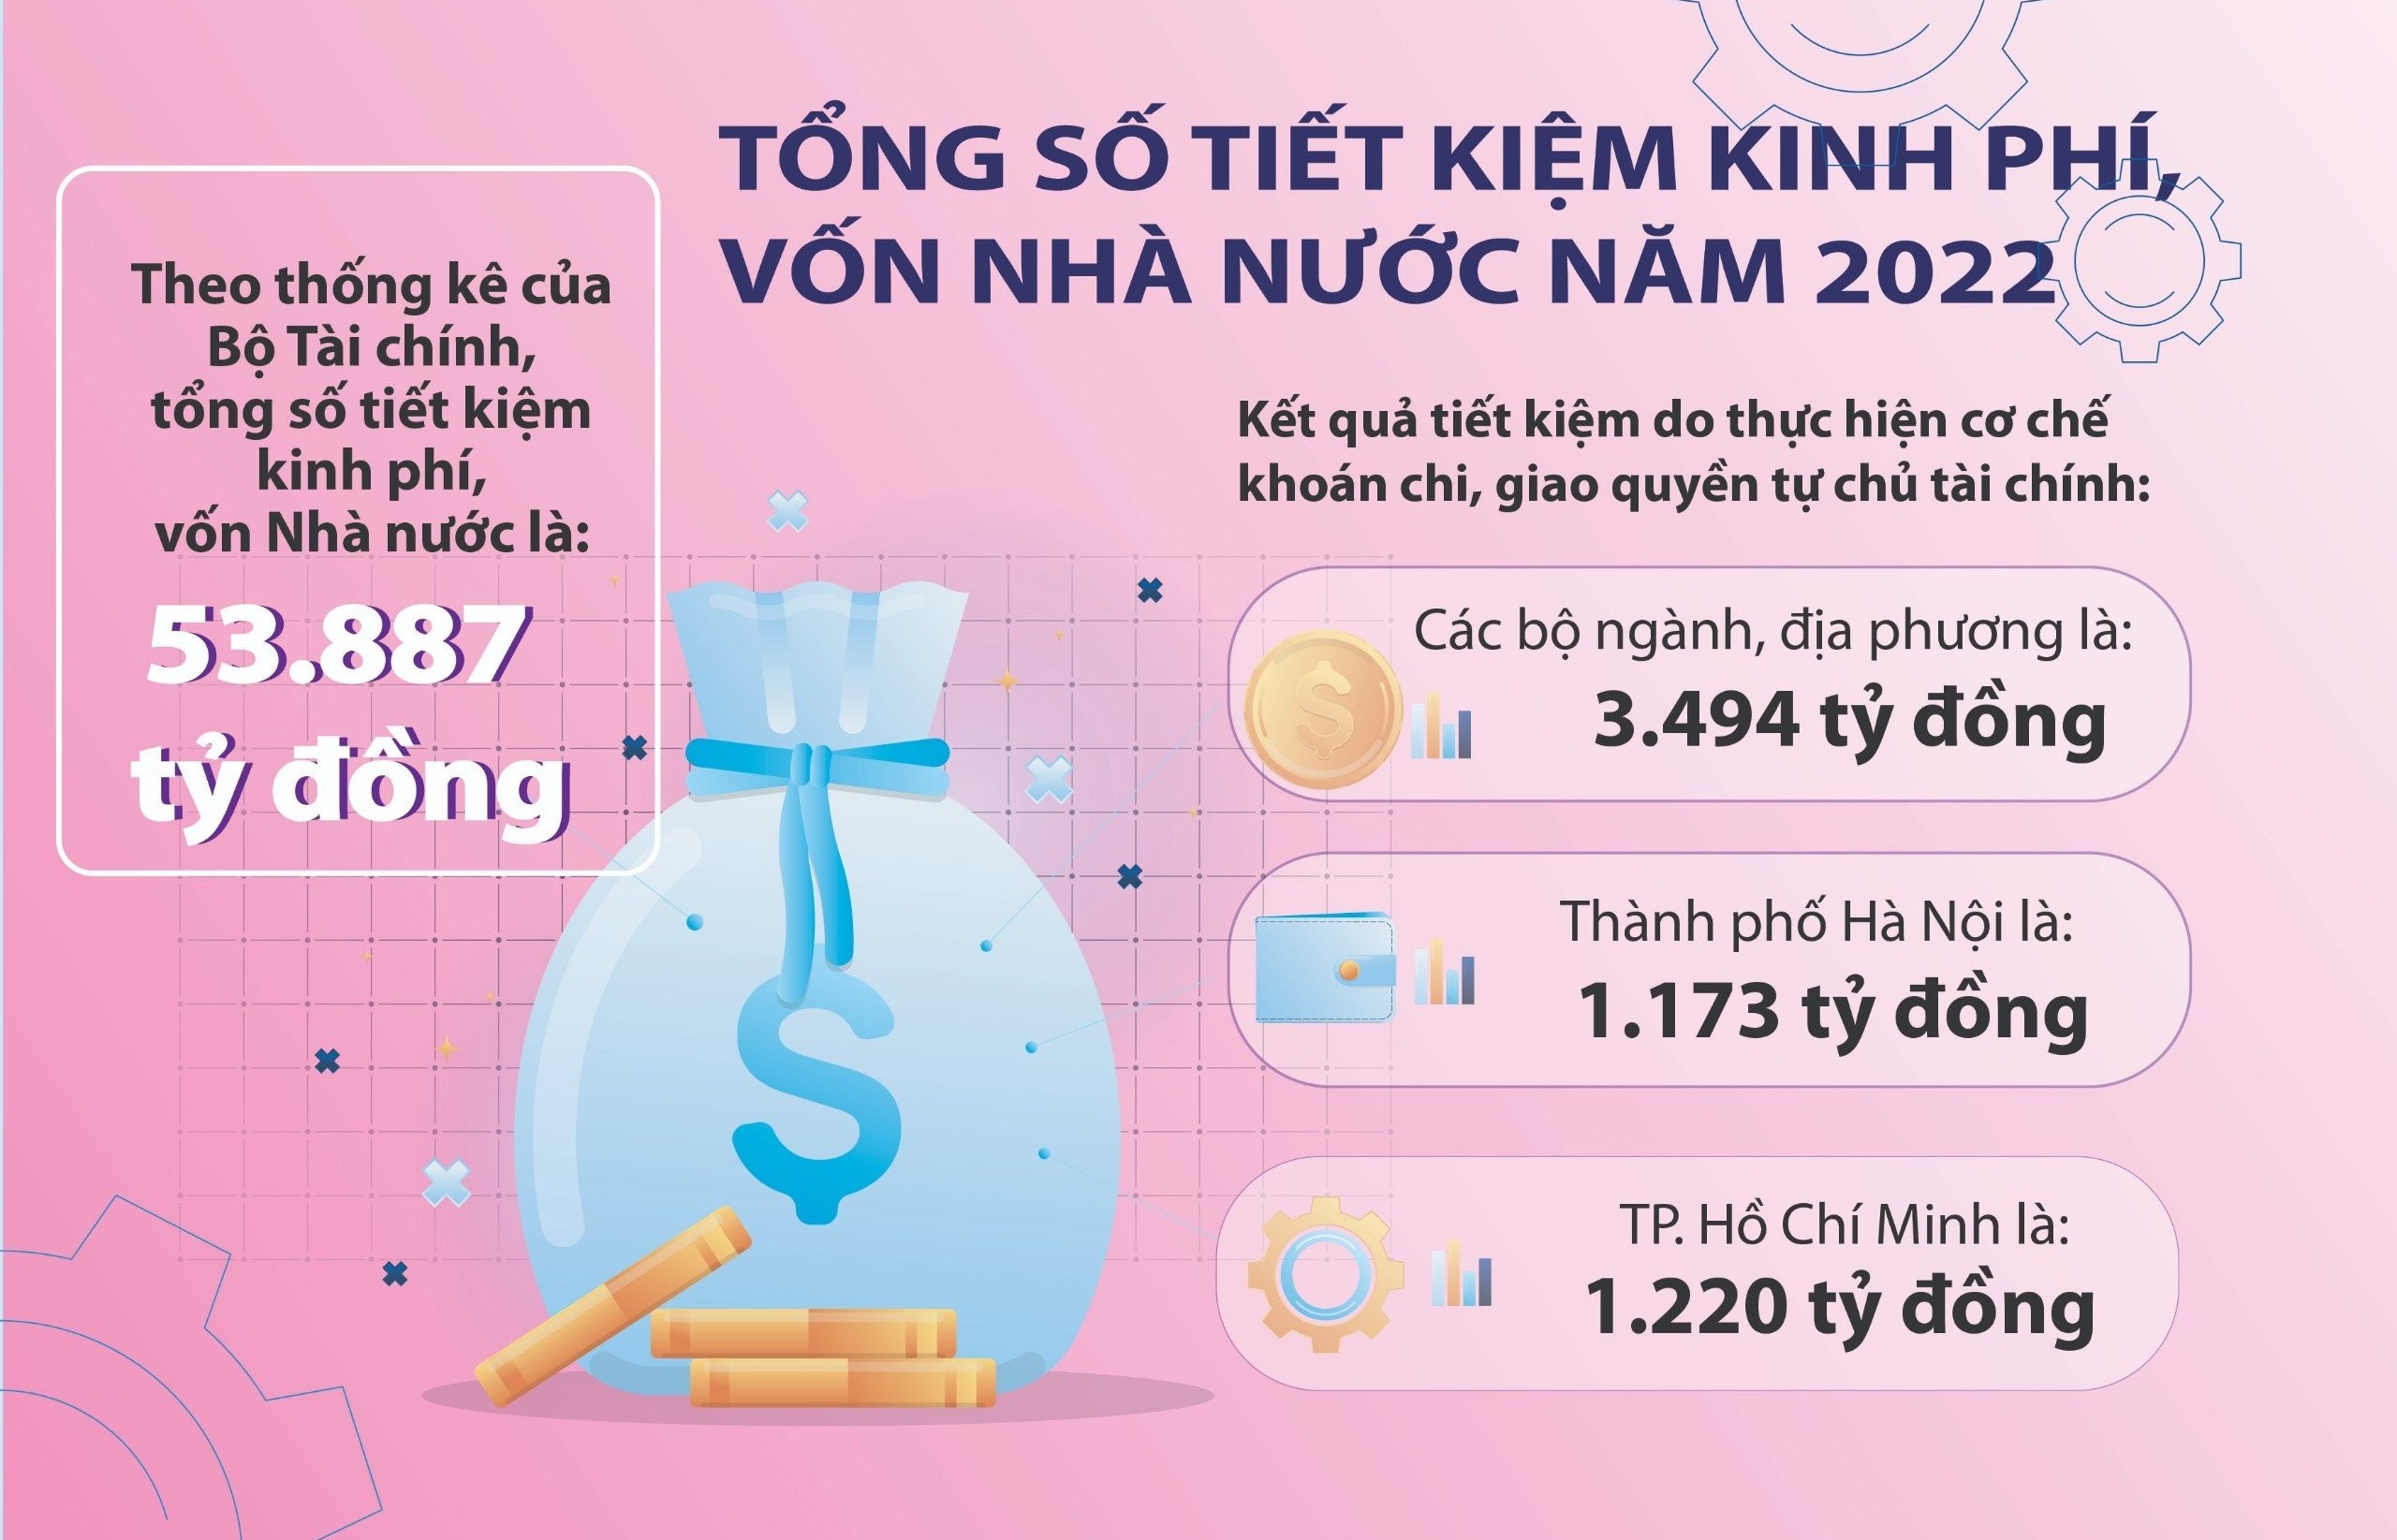 Tổng số tiết kiệm kinh phí, vốn Nhà nước năm 2022 là 53.887 tỷ đồng